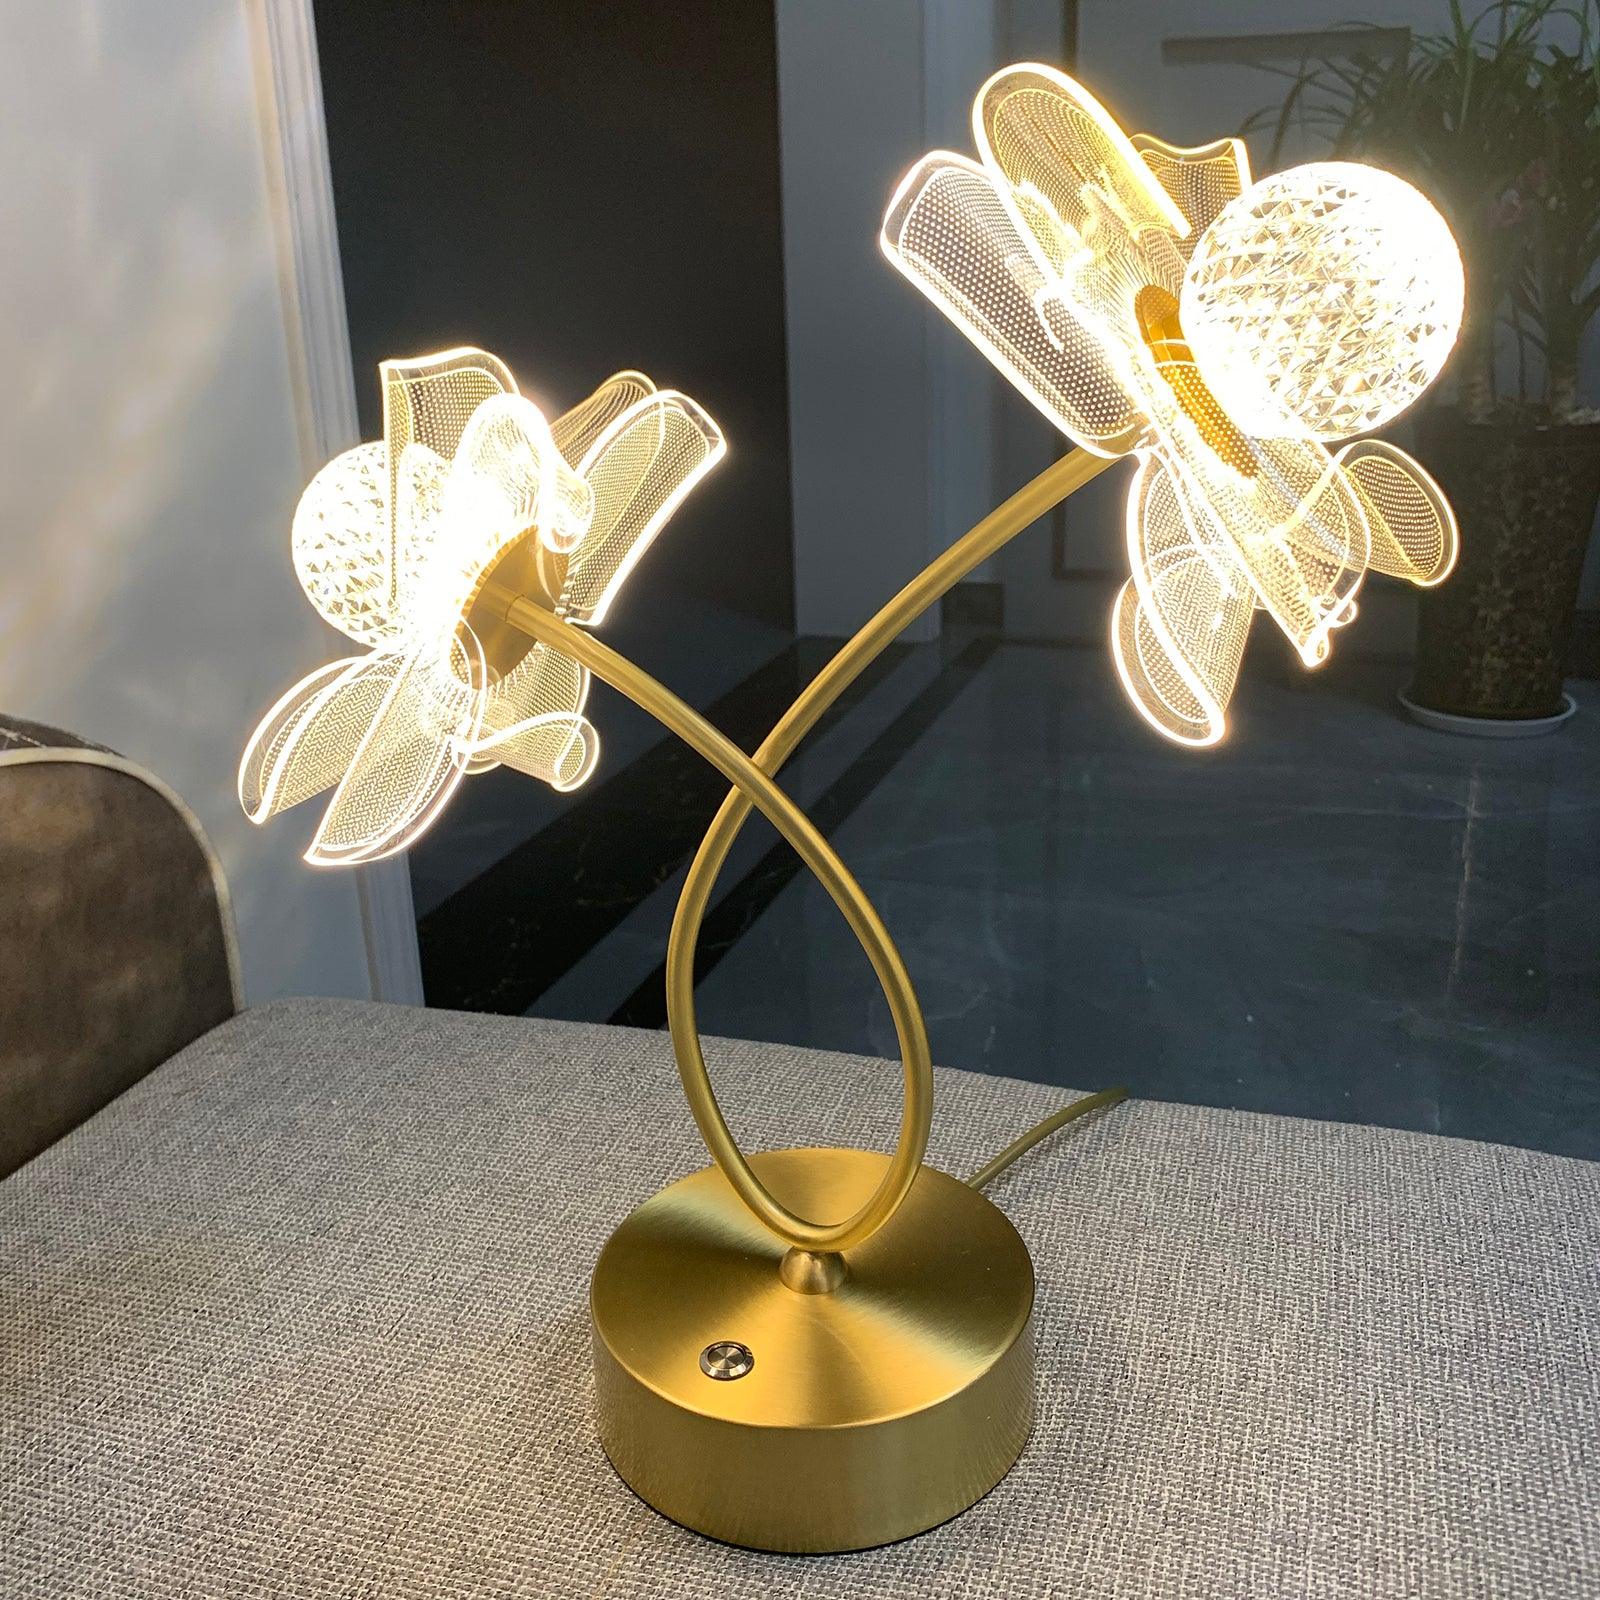 Fiorella Table Lamp - Decormote